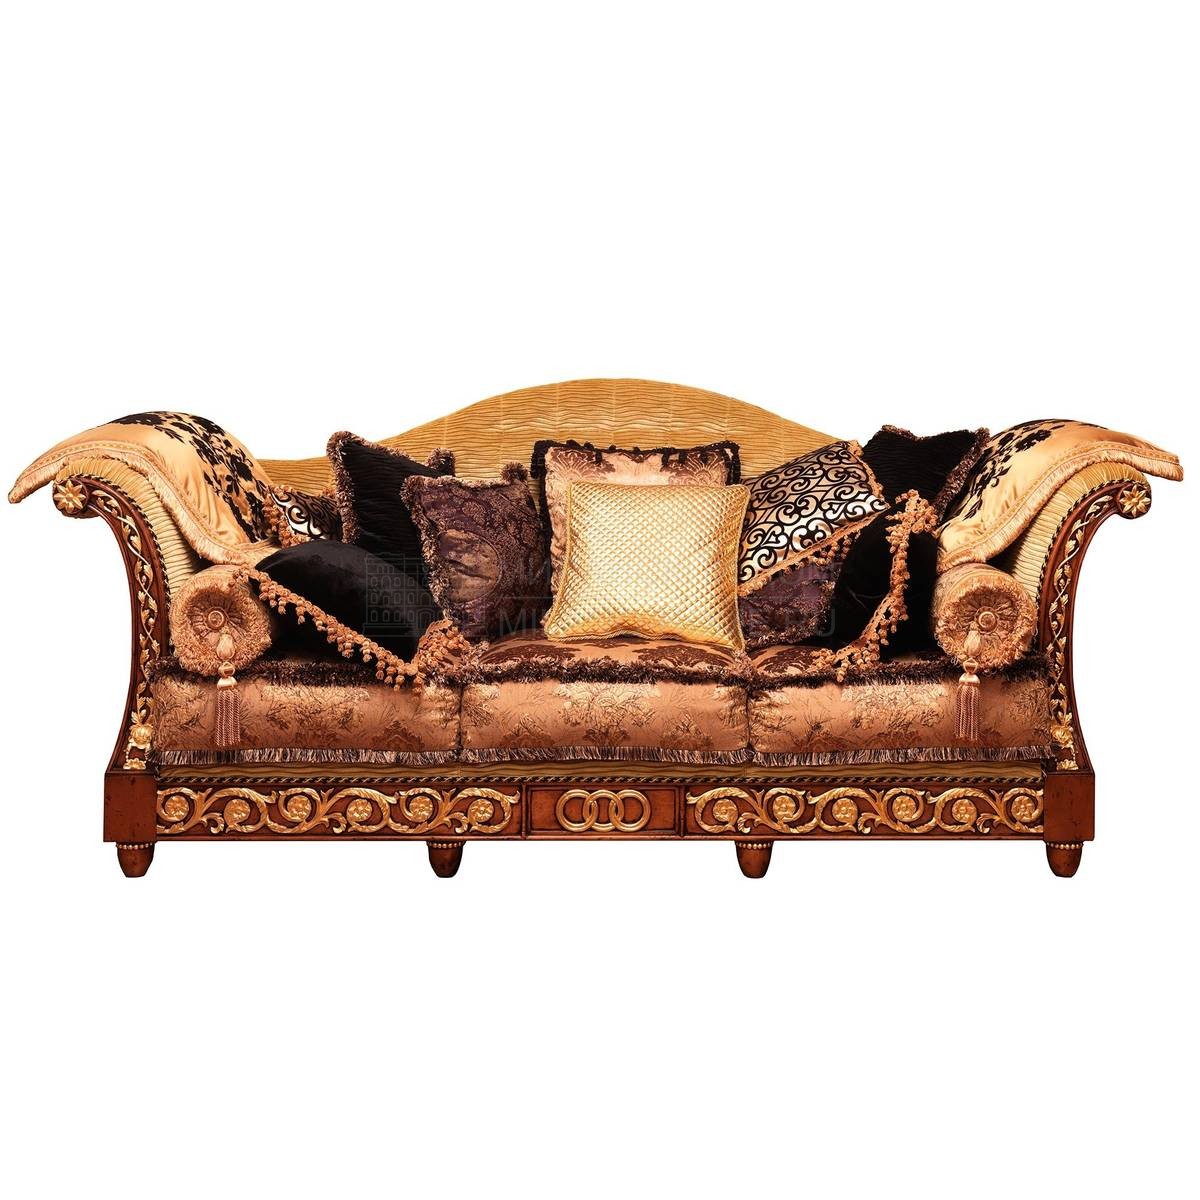 Прямой диван The Upholstery/D430 из Италии фабрики FRANCESCO MOLON